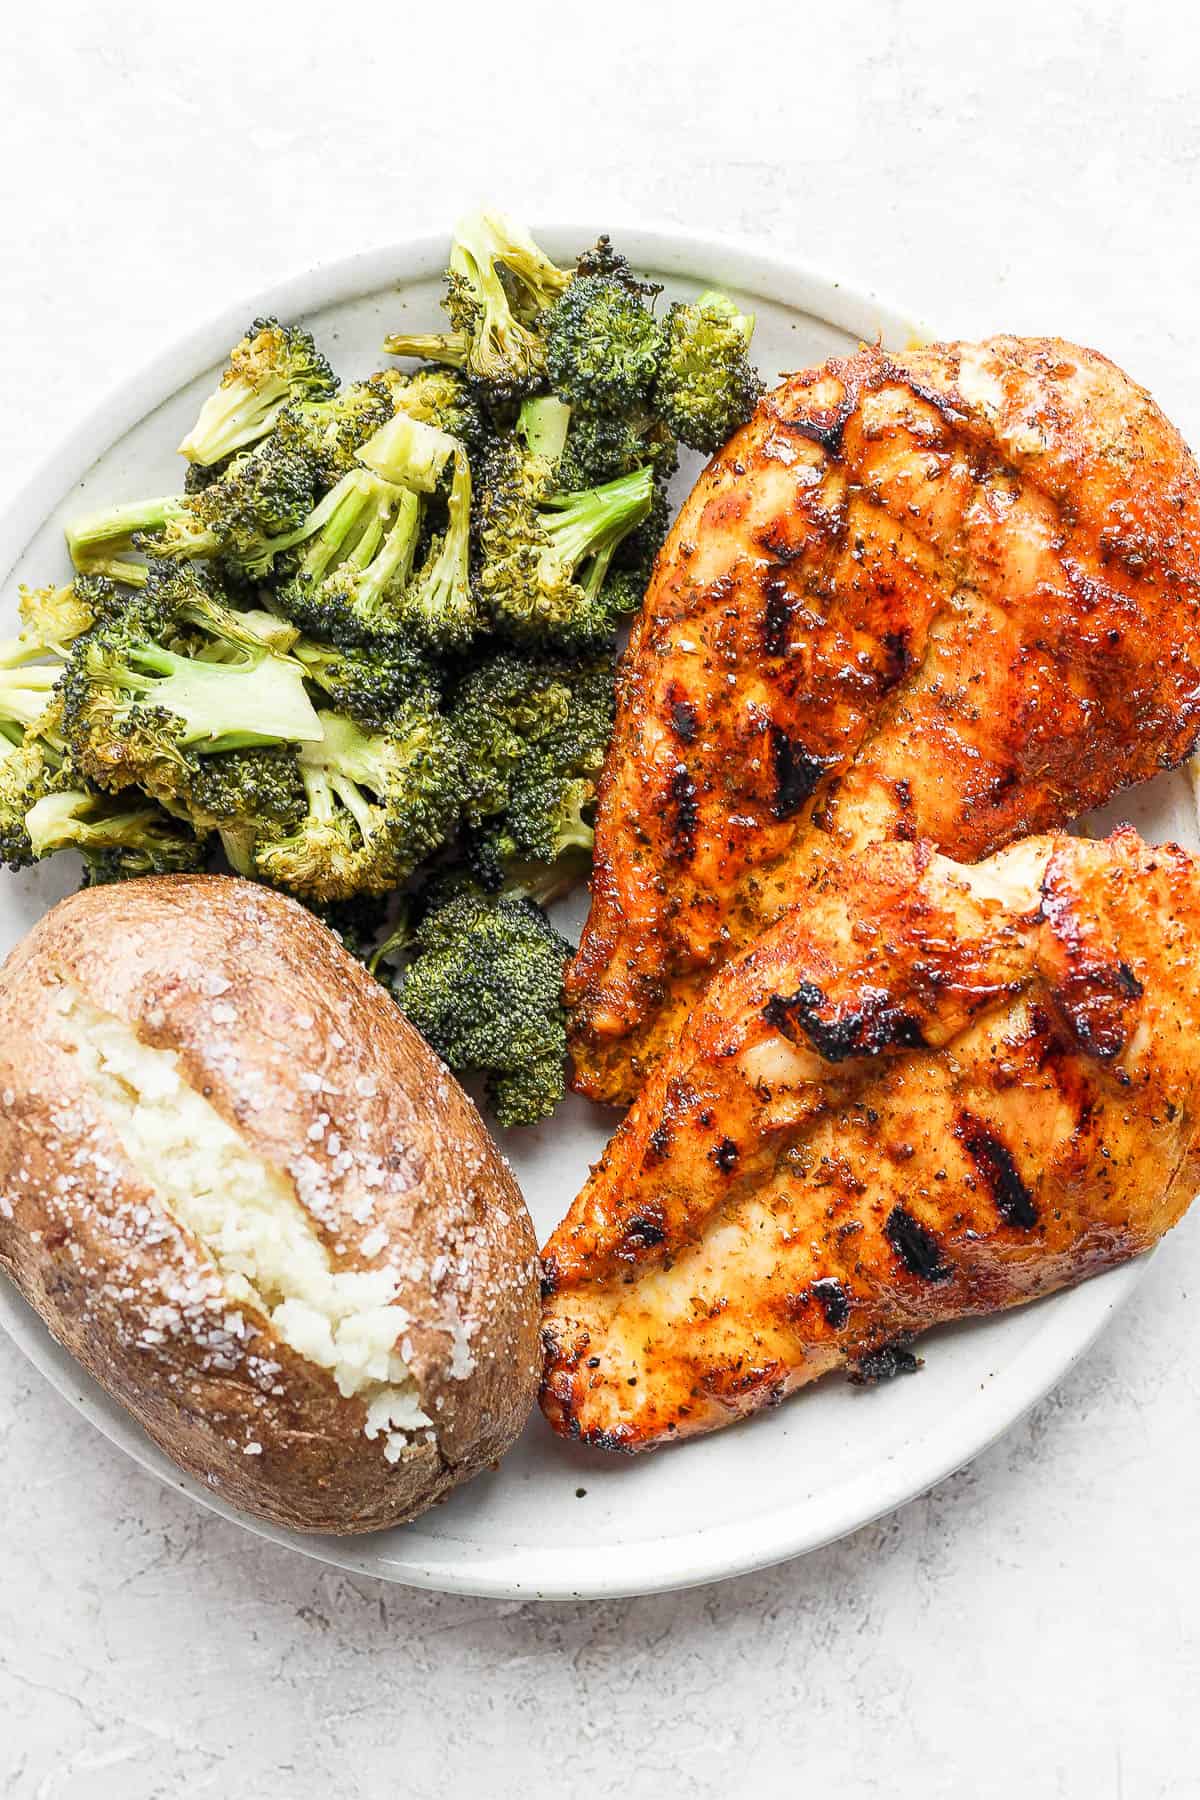 Plate of chicken breast, broccoli and potato. 